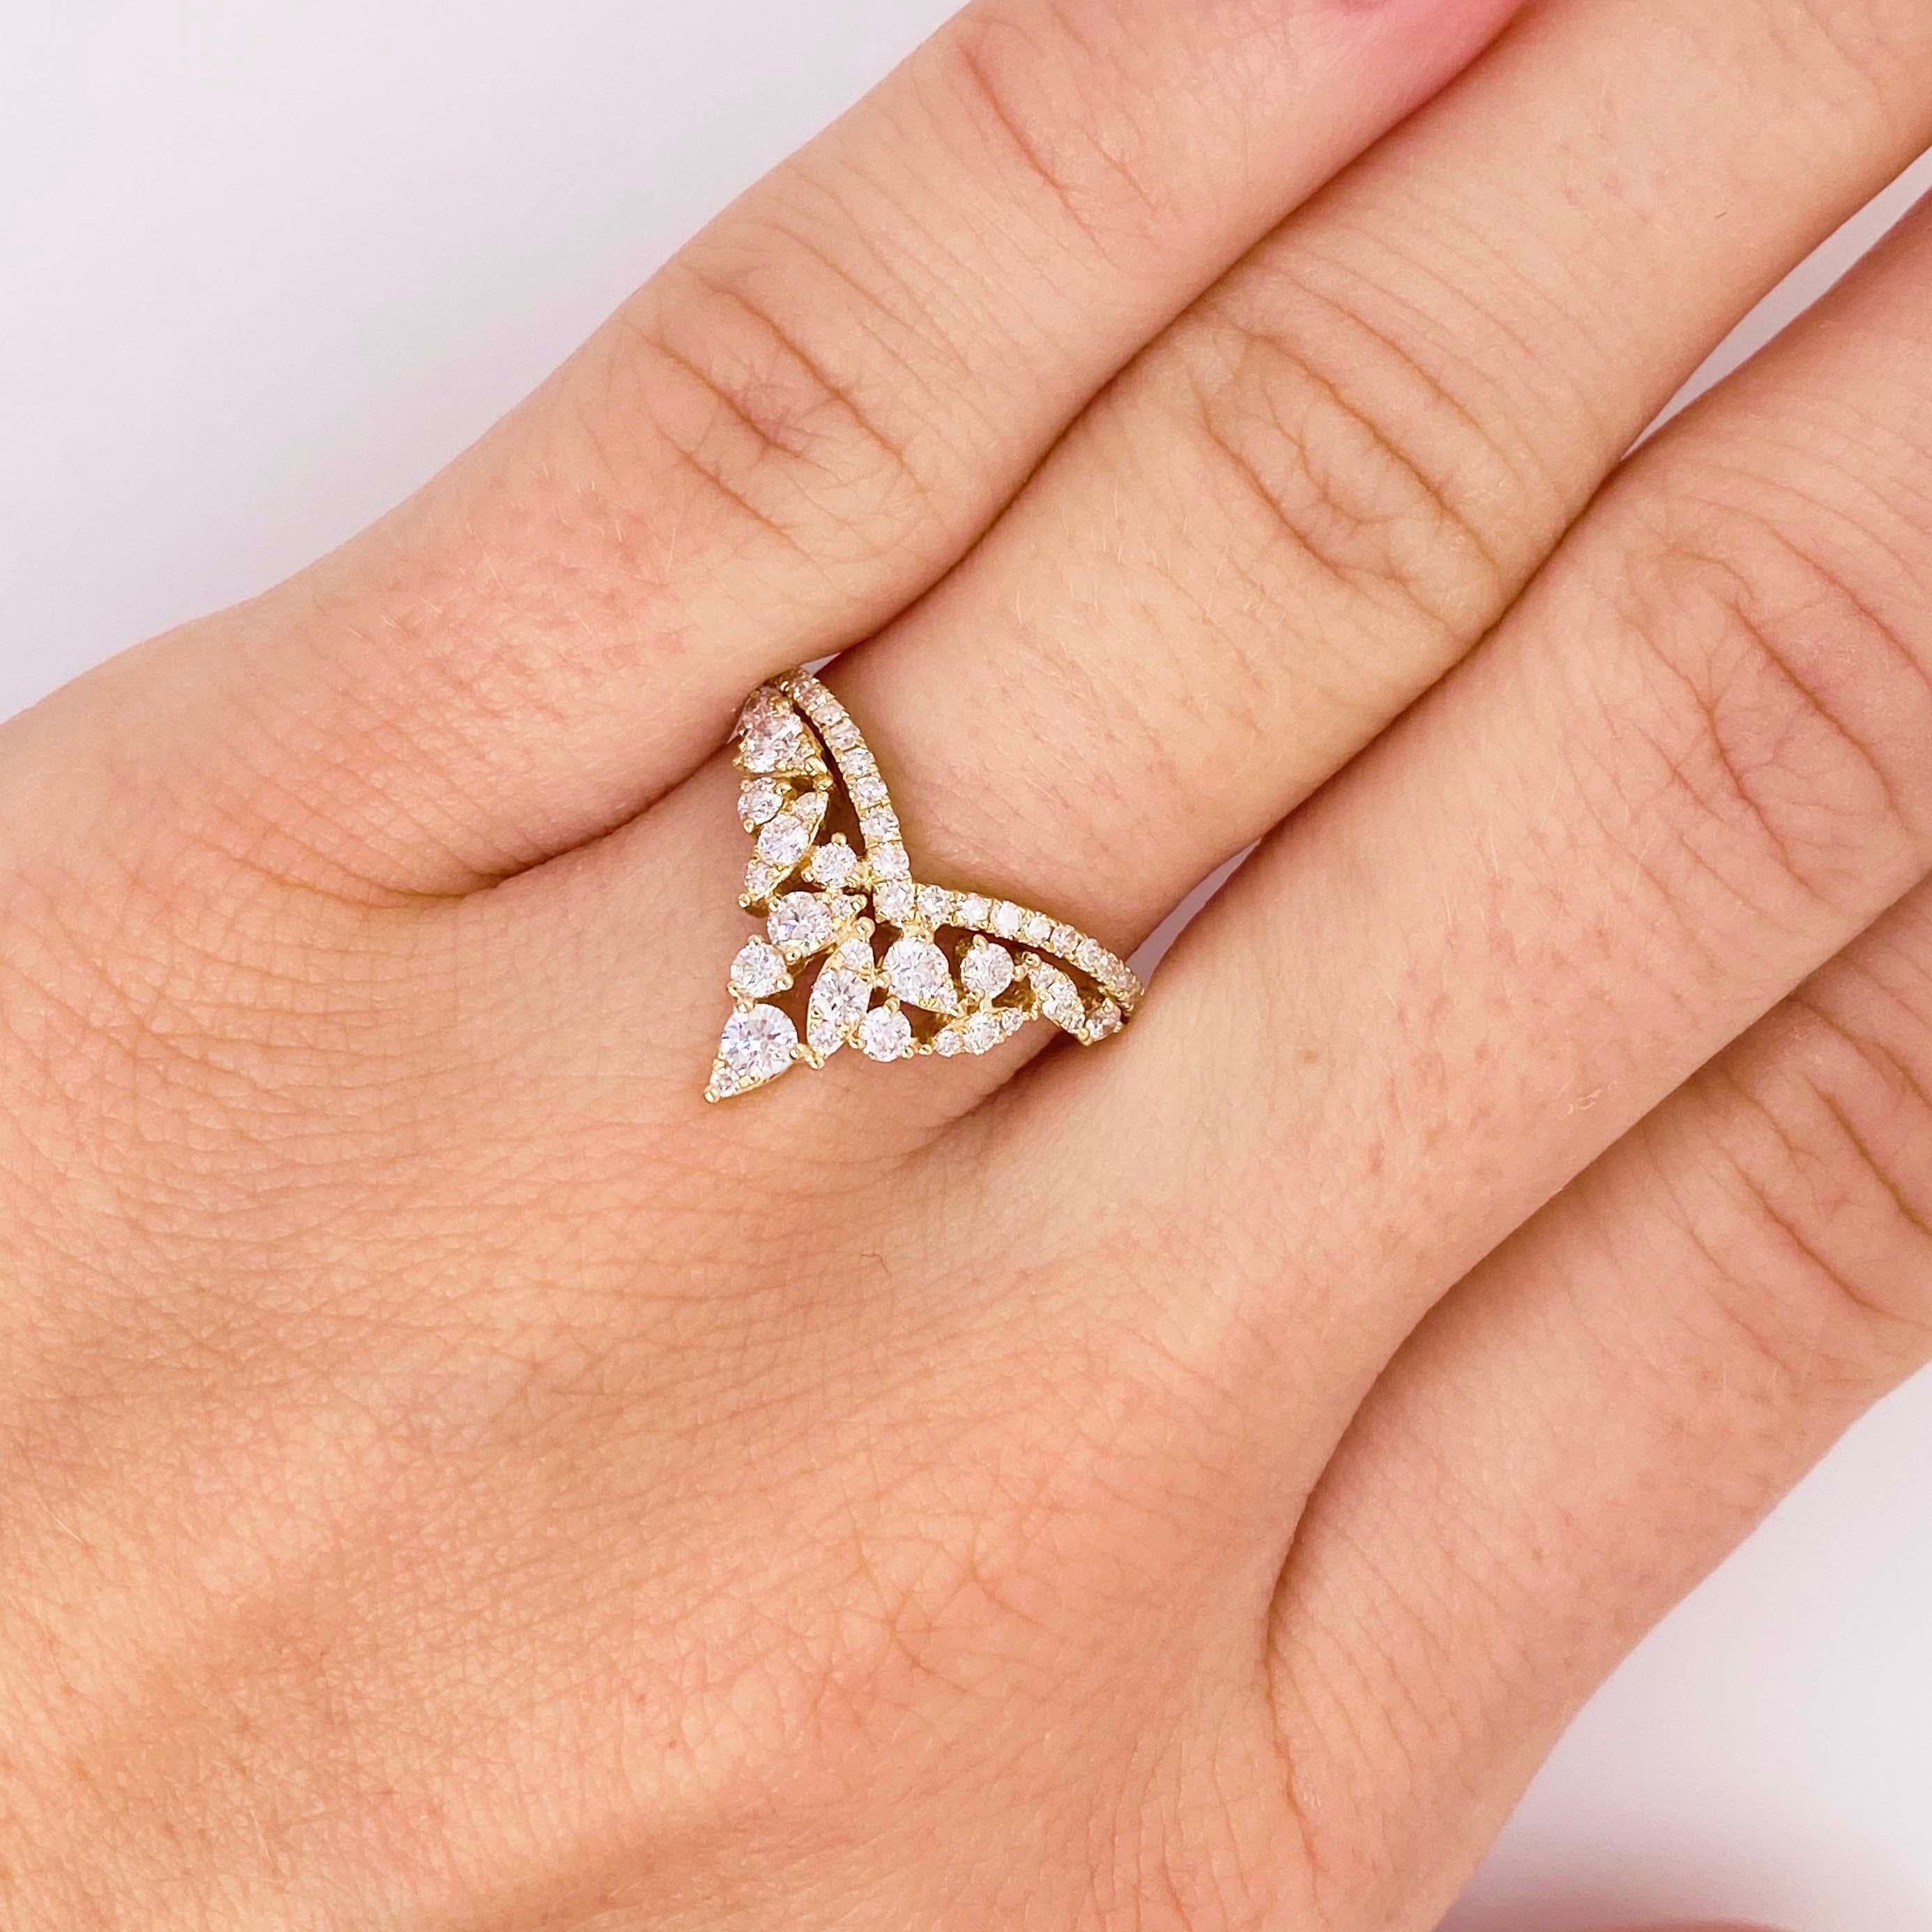 Atemberaubendes Diamant-V-Band! Dieses wunderschöne Diamantband hat ein brillantes und einzigartiges Design. Mit einem Cluster aus strahlend weißen Diamanten, die in einer perfekten 